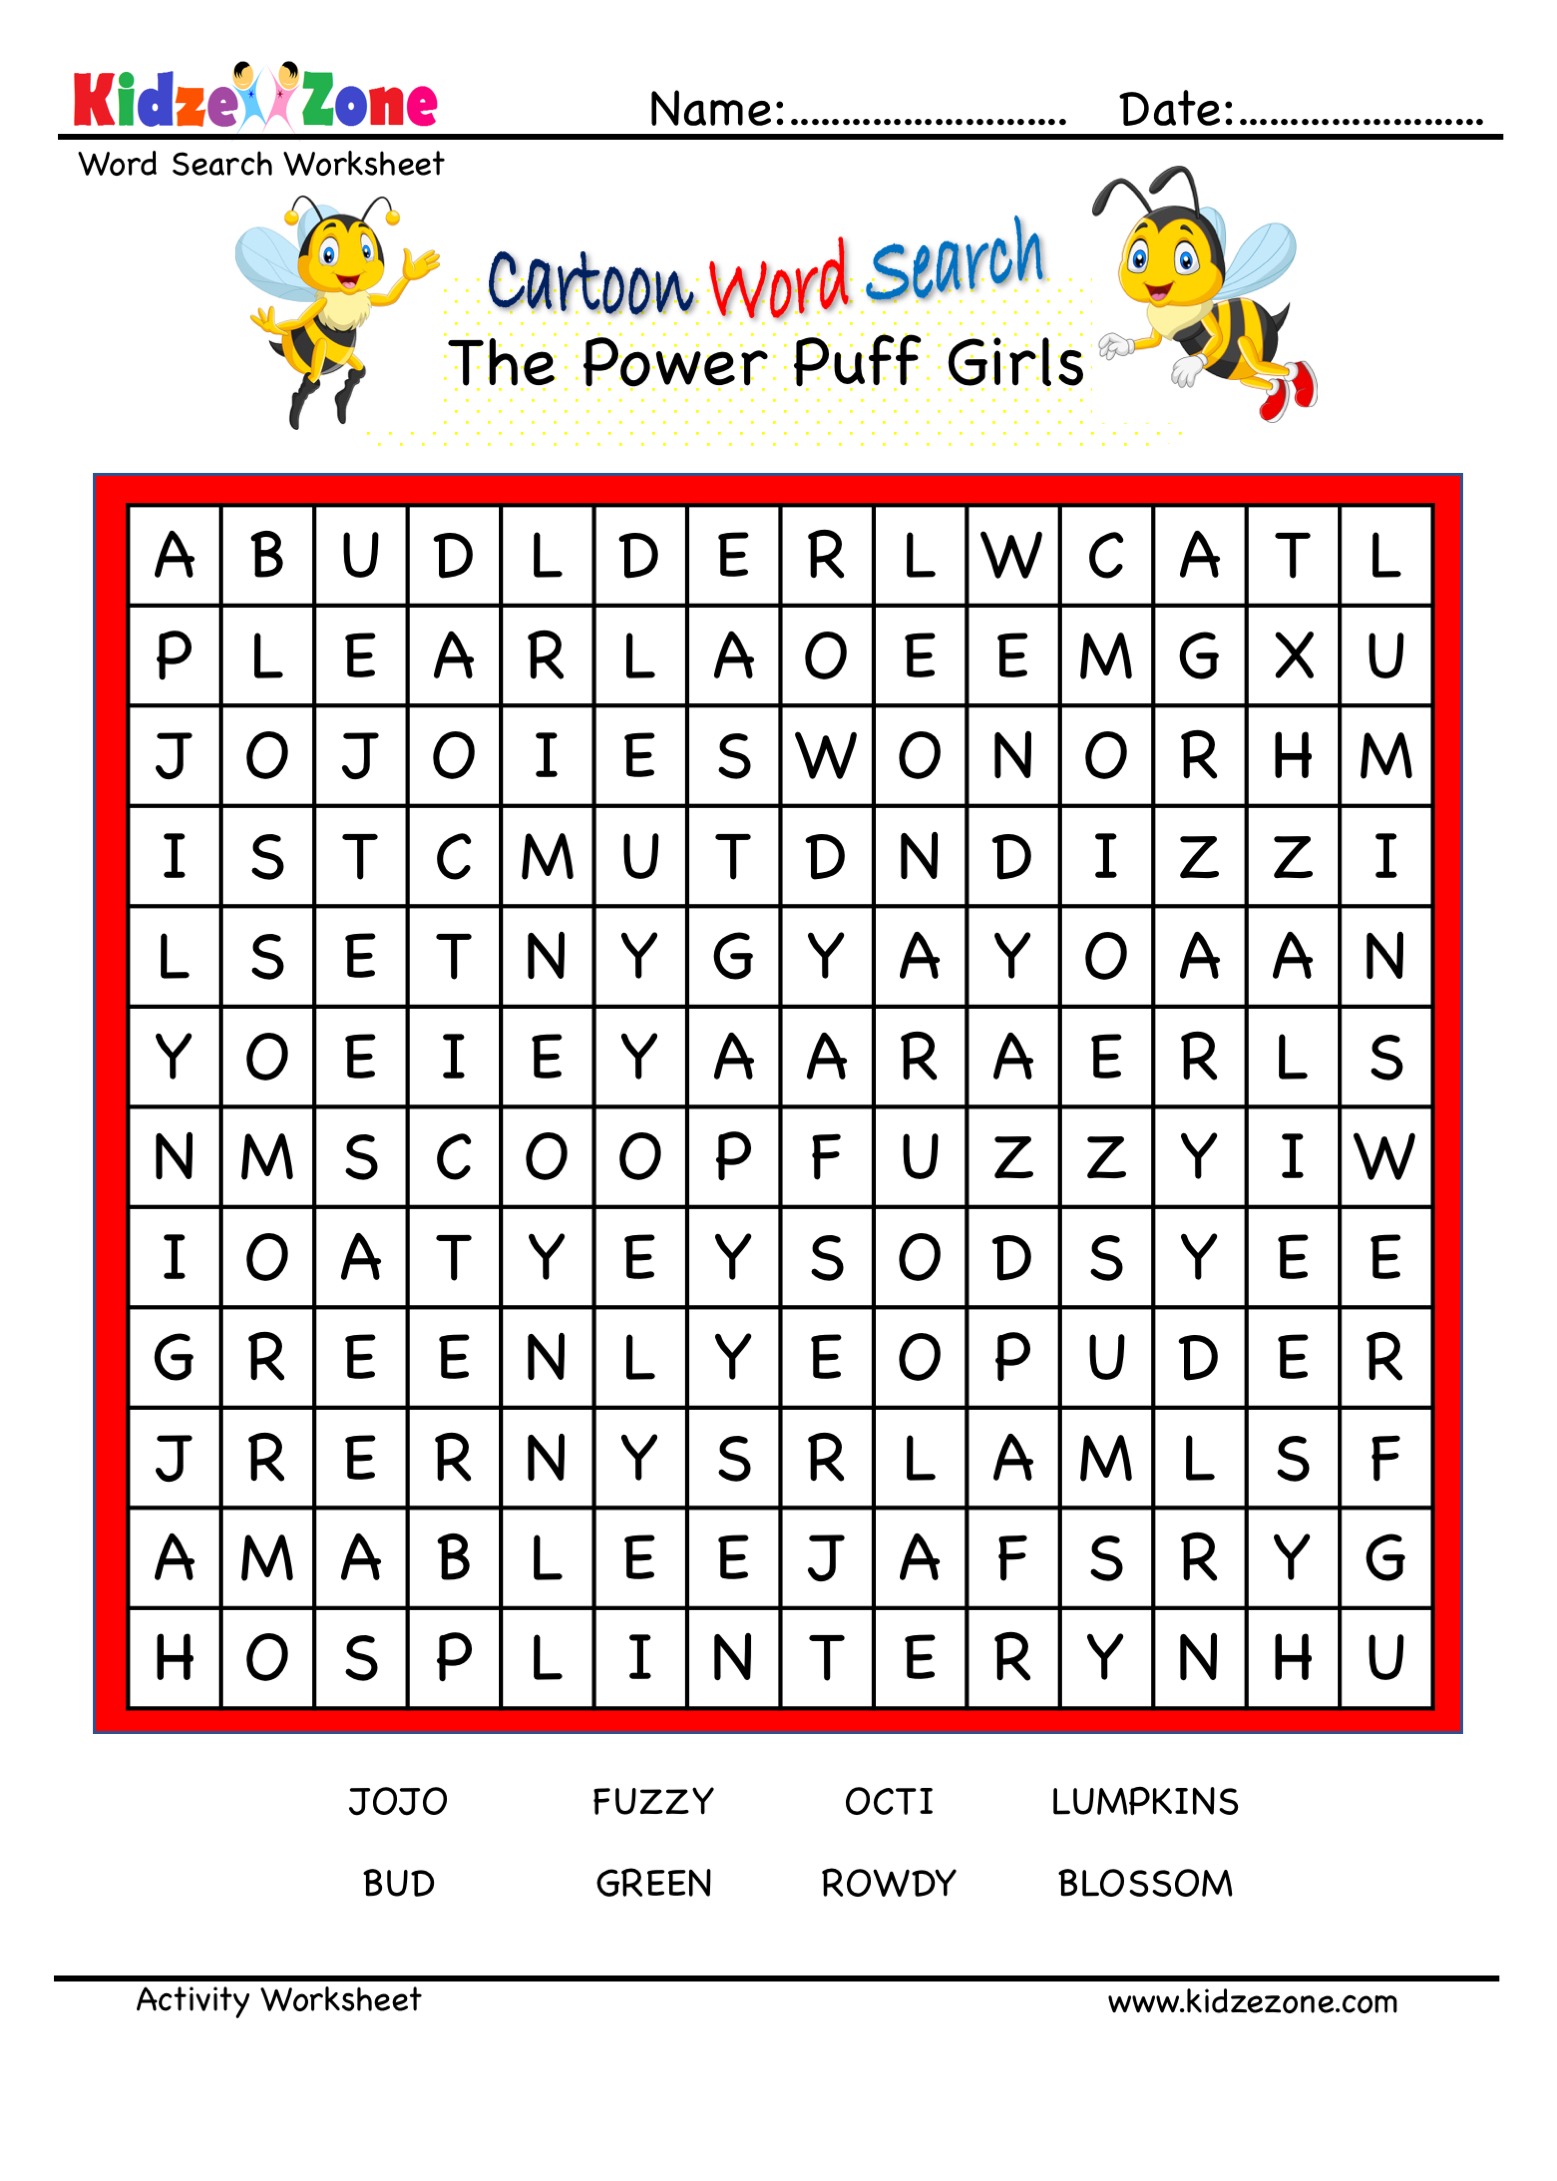 The Power Puff Girls Character Puzzle - KidzeZone